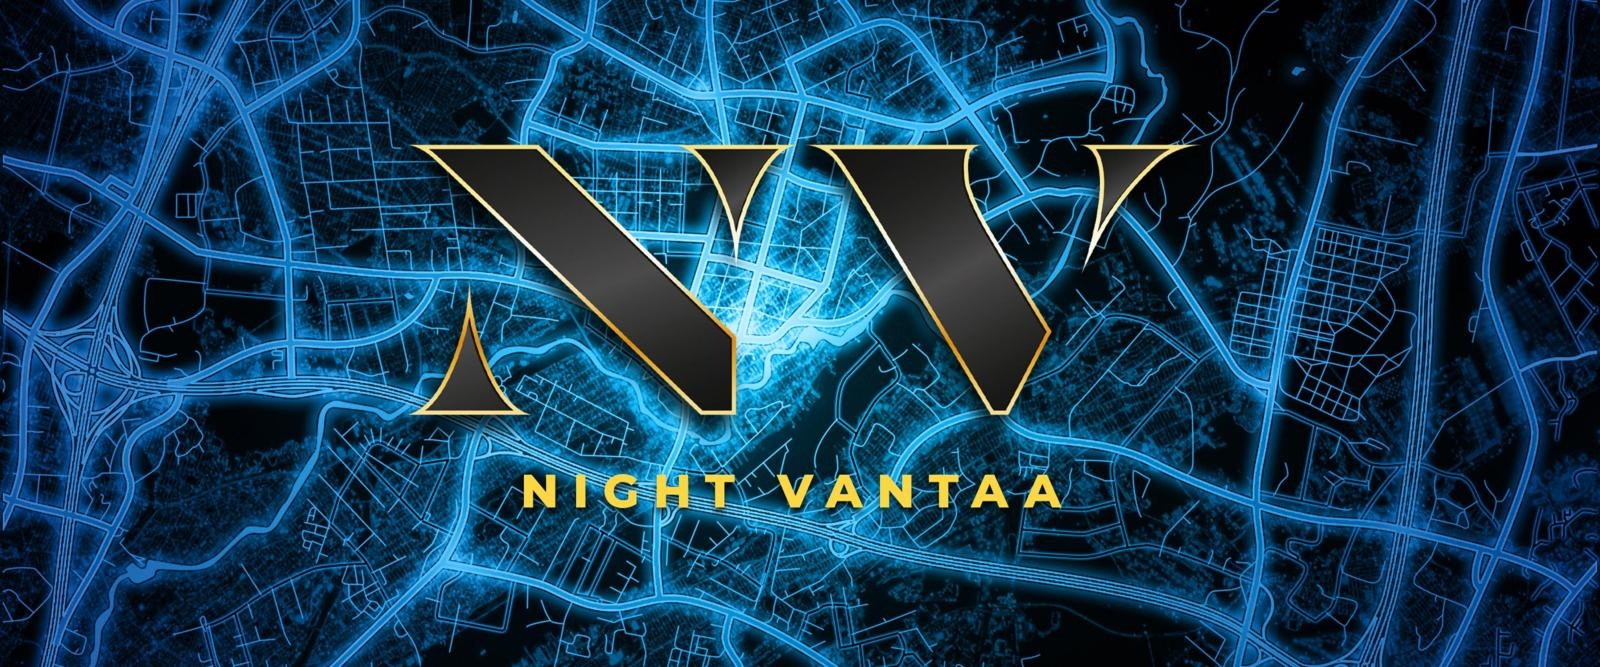 Night Vantaa